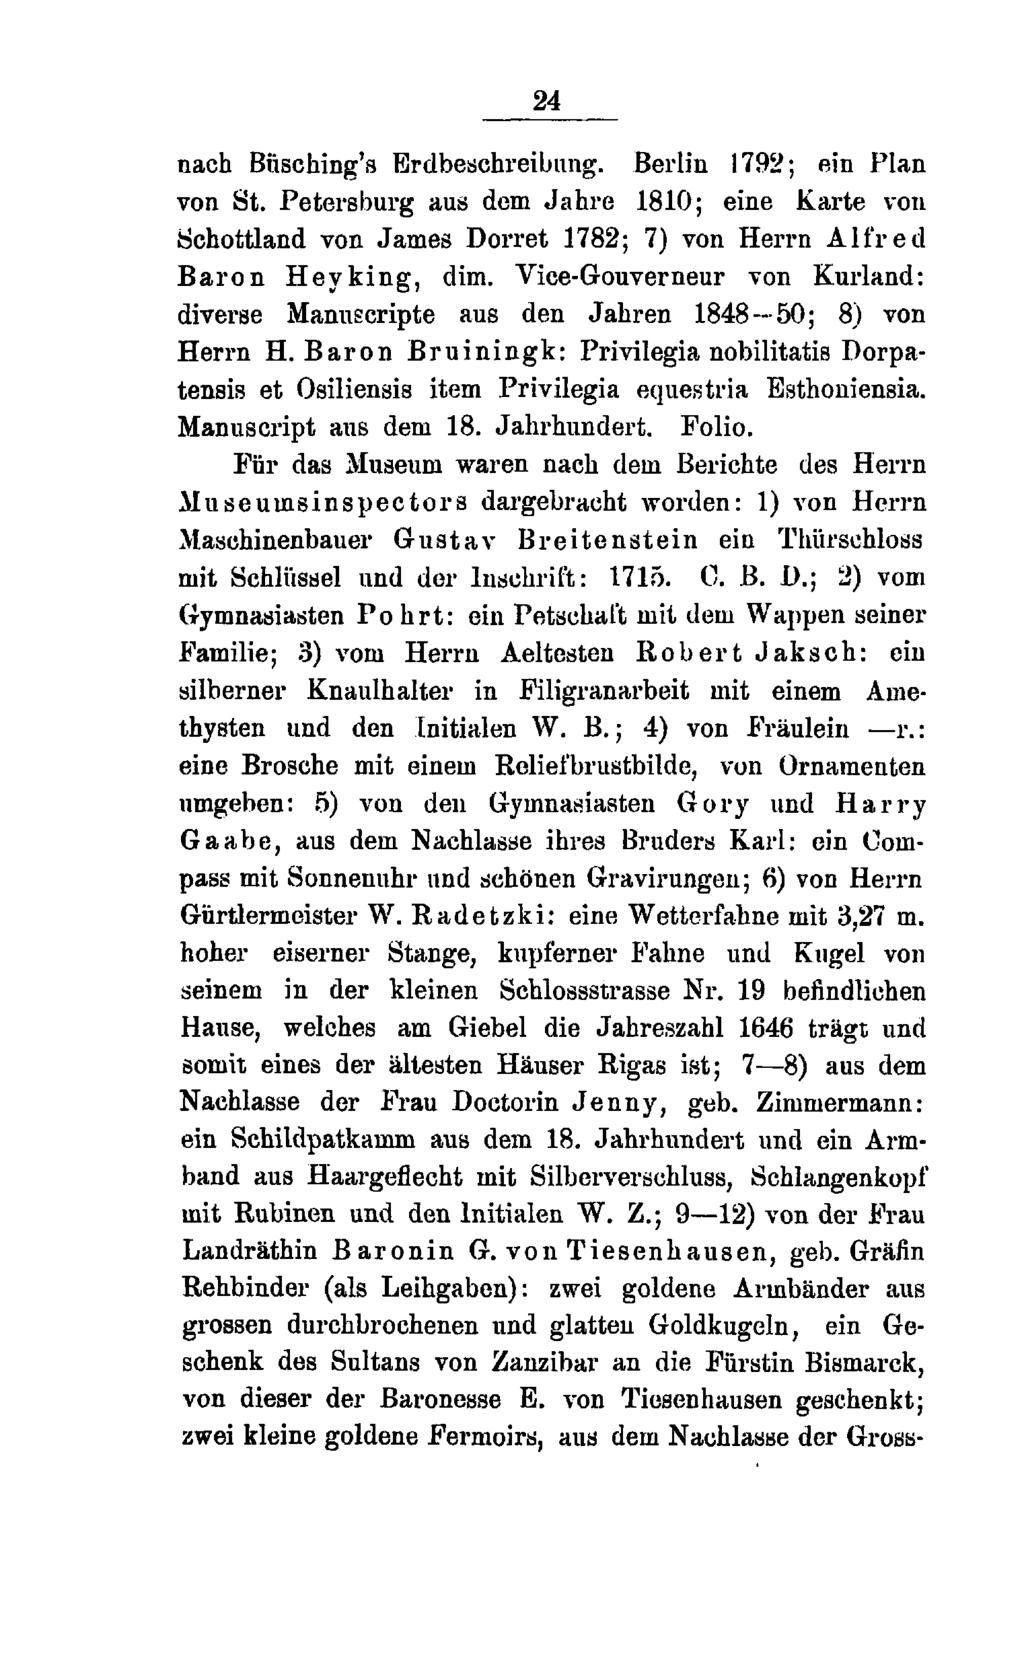 24 nach Büsching's Erdbeschreibung. Berlin 1792; ein Plan von St. Petersburg aus dem Jahre 1810; eine Karte von Schottland von James Dorret 1782; 7) von Herrn Alfred Baron Heyking, dim.